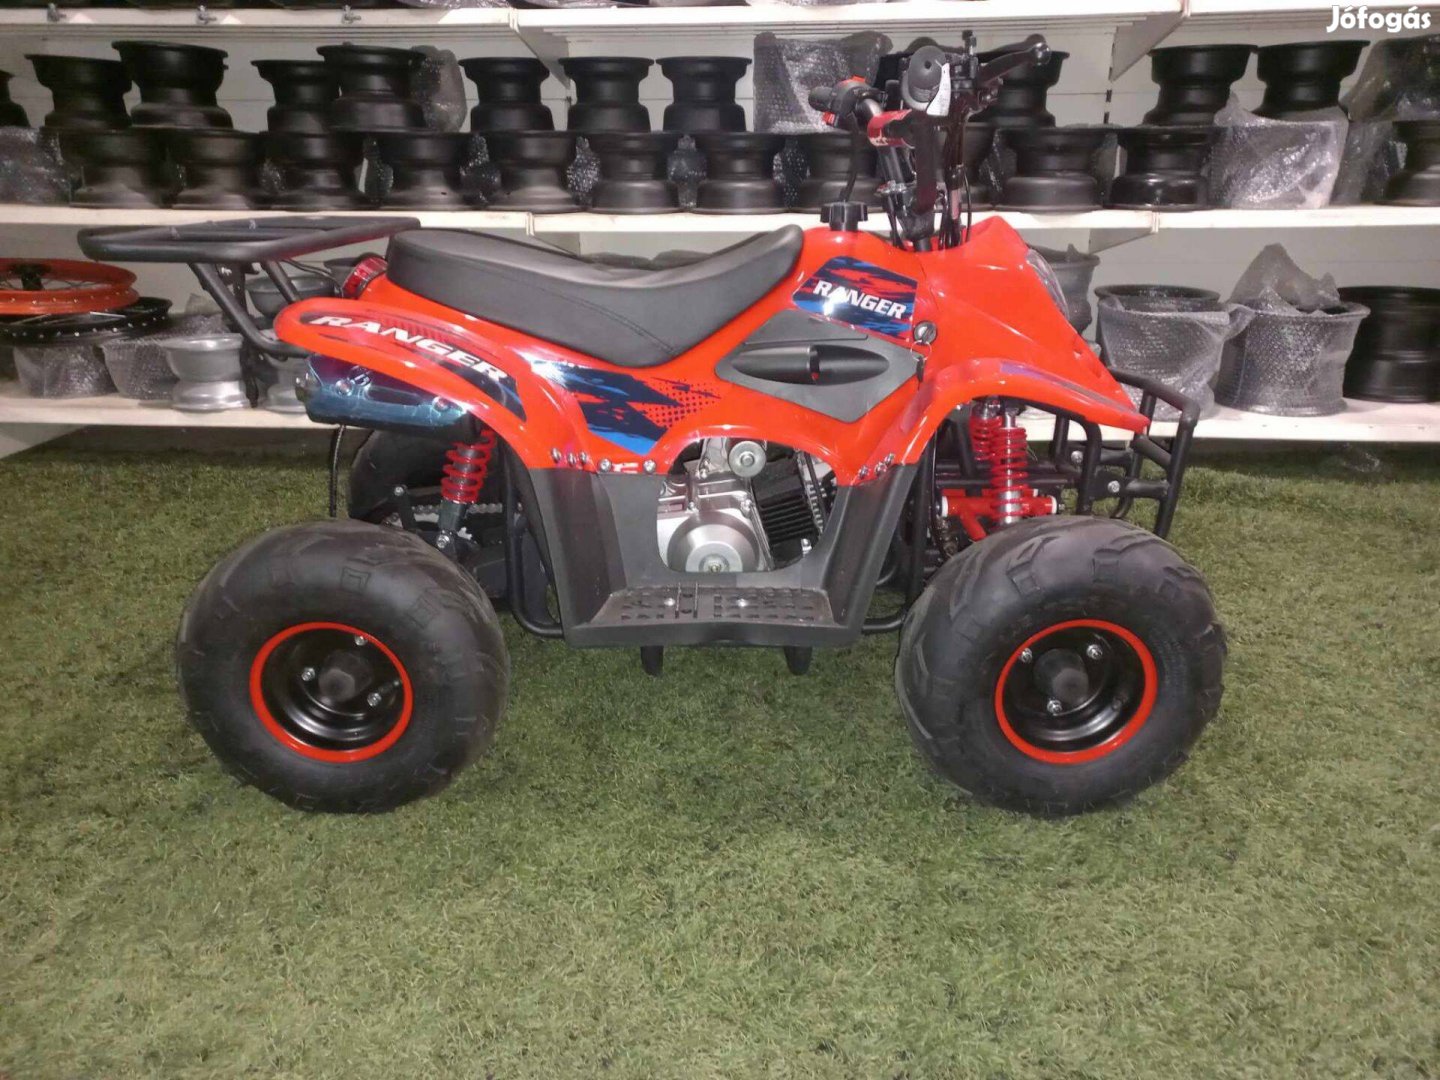 Kxd 001 Ranger gyerek quad, 110cc orange color